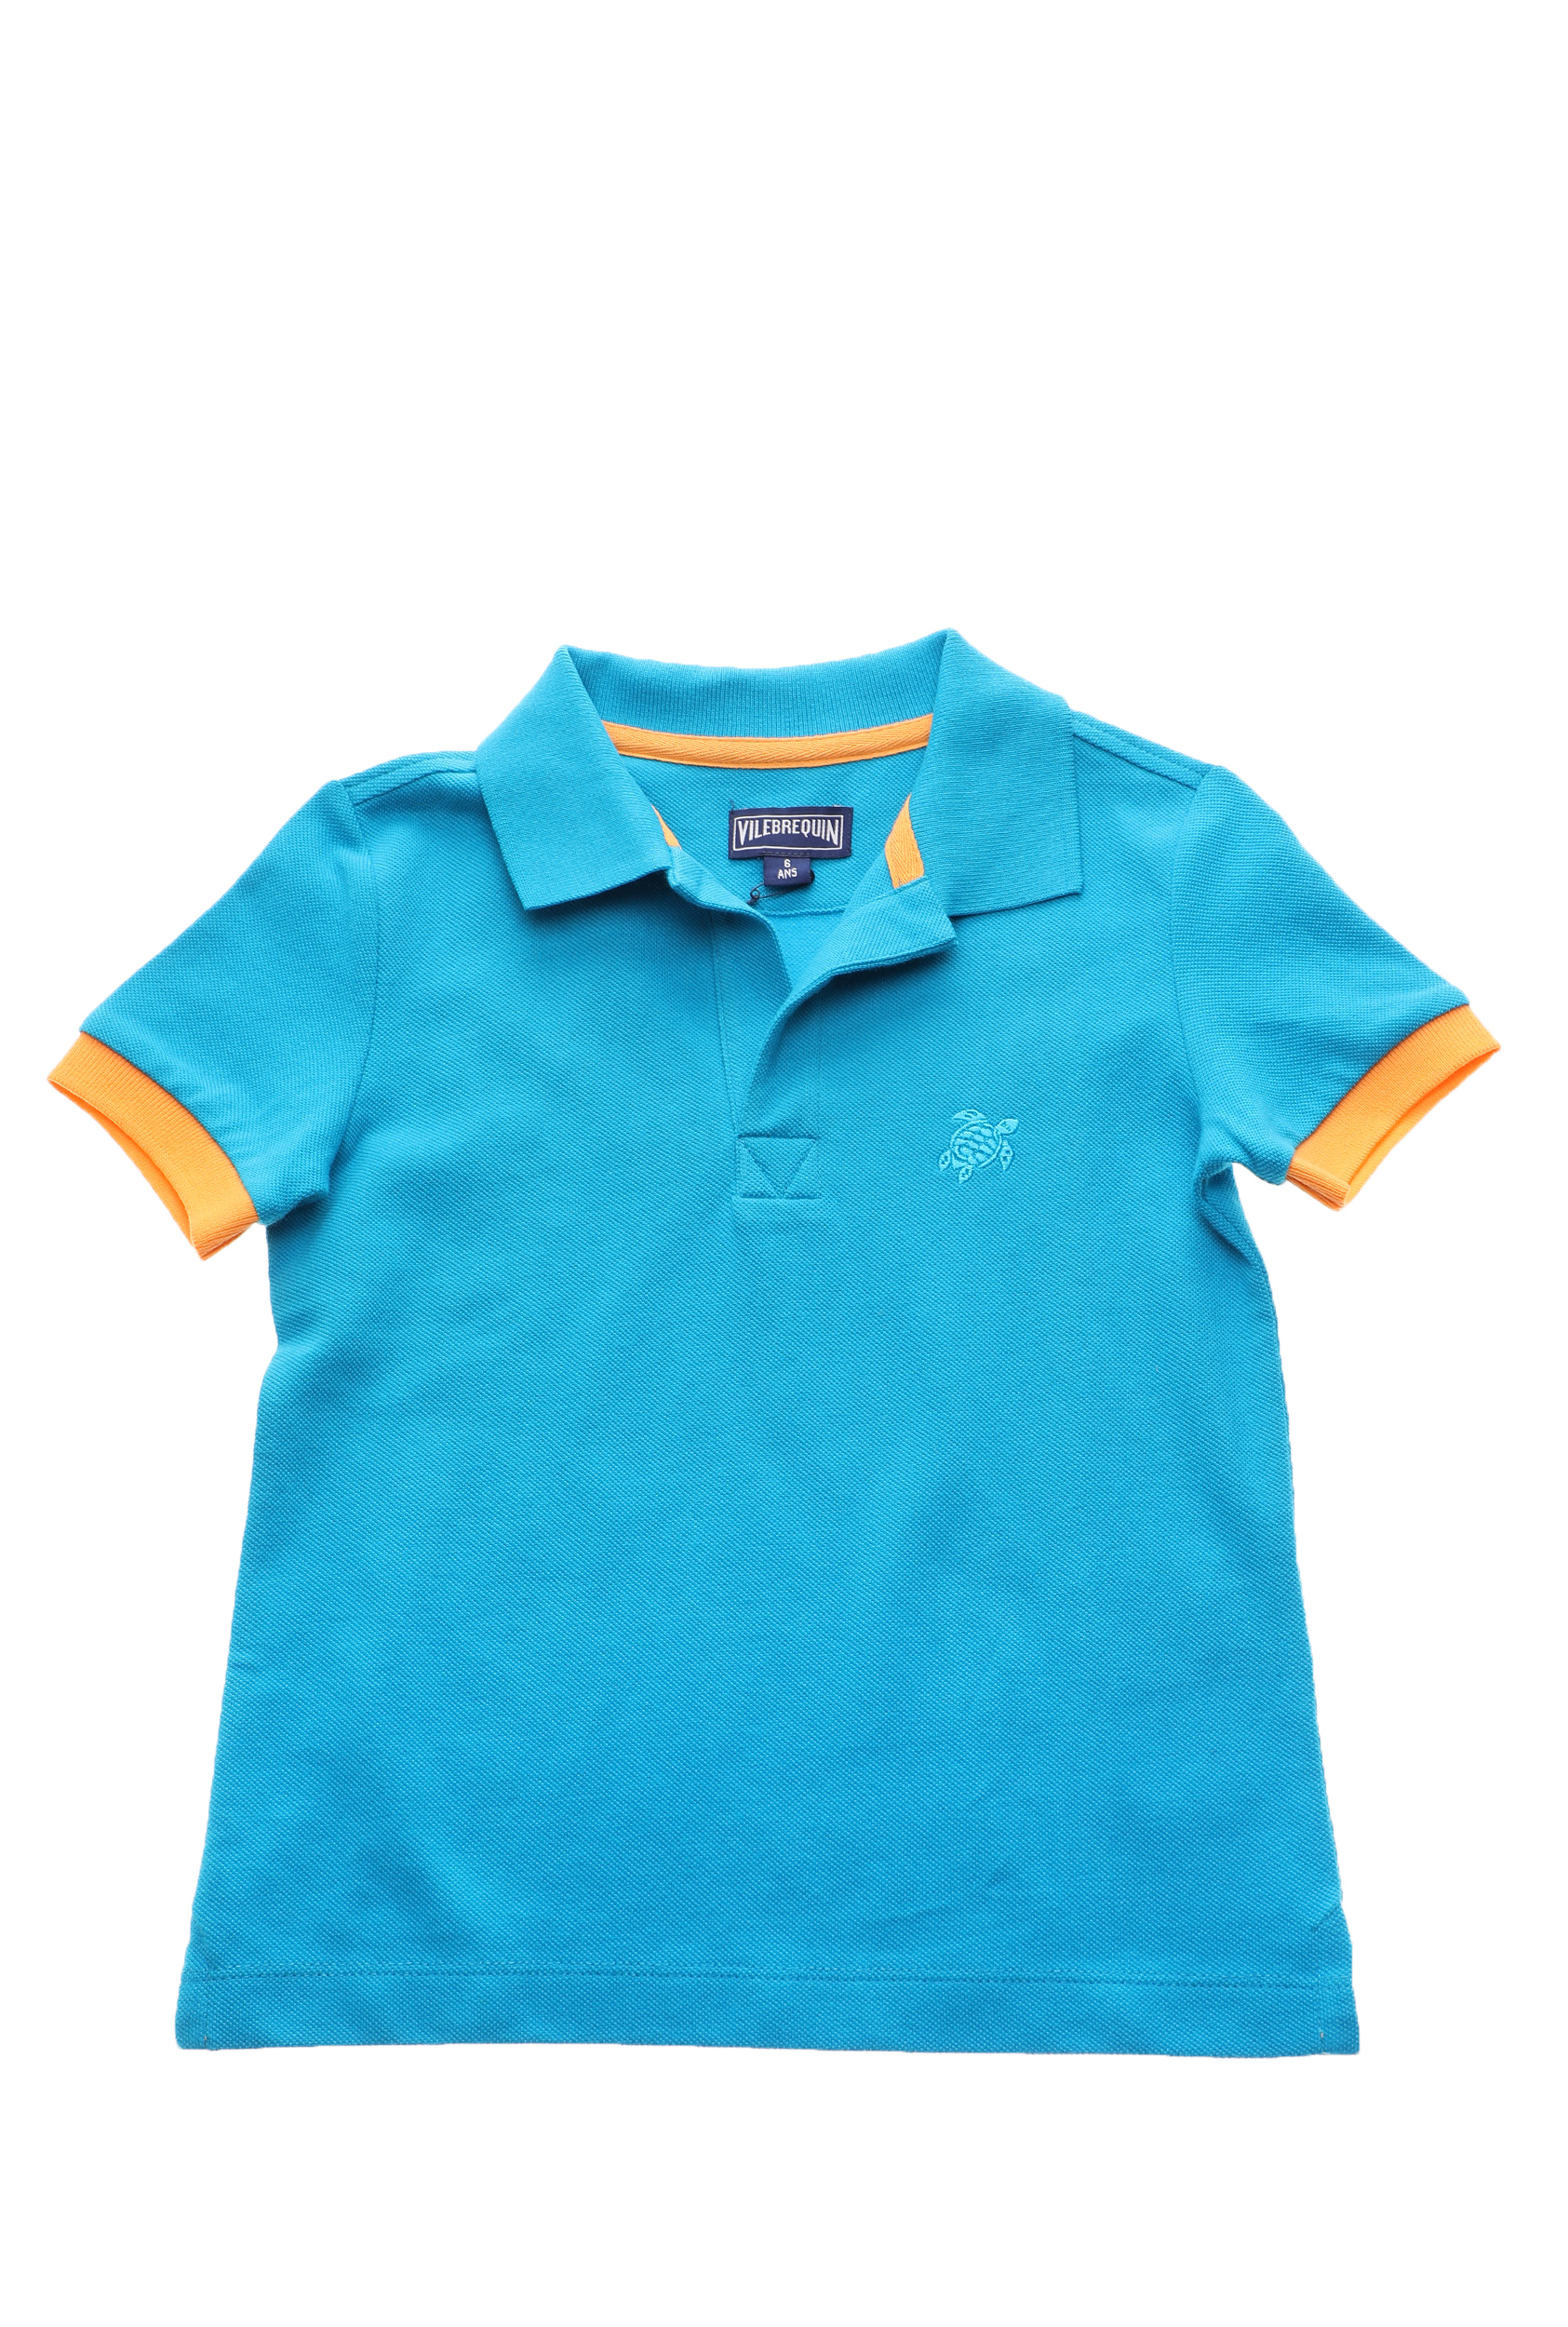 Παιδικά/Boys/Ρούχα/Μπλούζες VILEBREQUIN - Παιδική polo μπλούζα για αγόρια VILEBREQUIN PANTIN μπλε πορτοκαλί